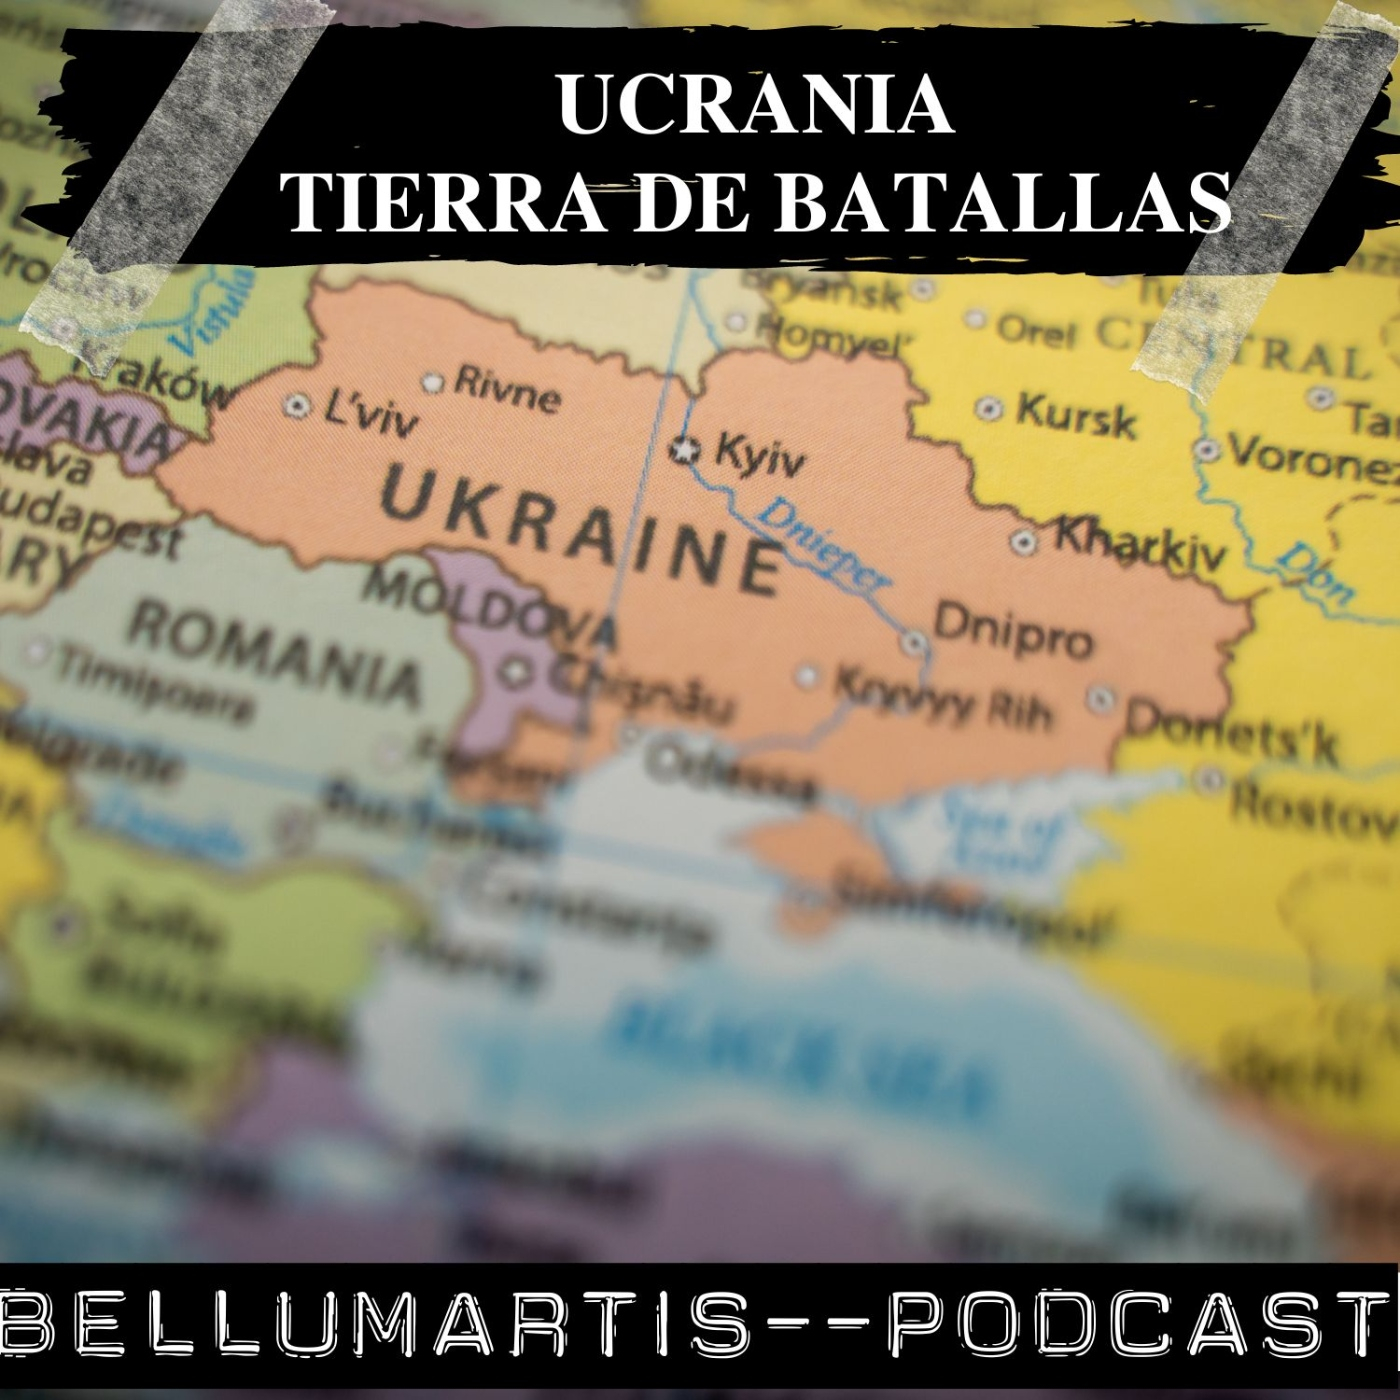 UCRANIA TIERRA DE BATALLAS: La historia militar de las llanuras de Ucrania *Lorente y Argüelles*